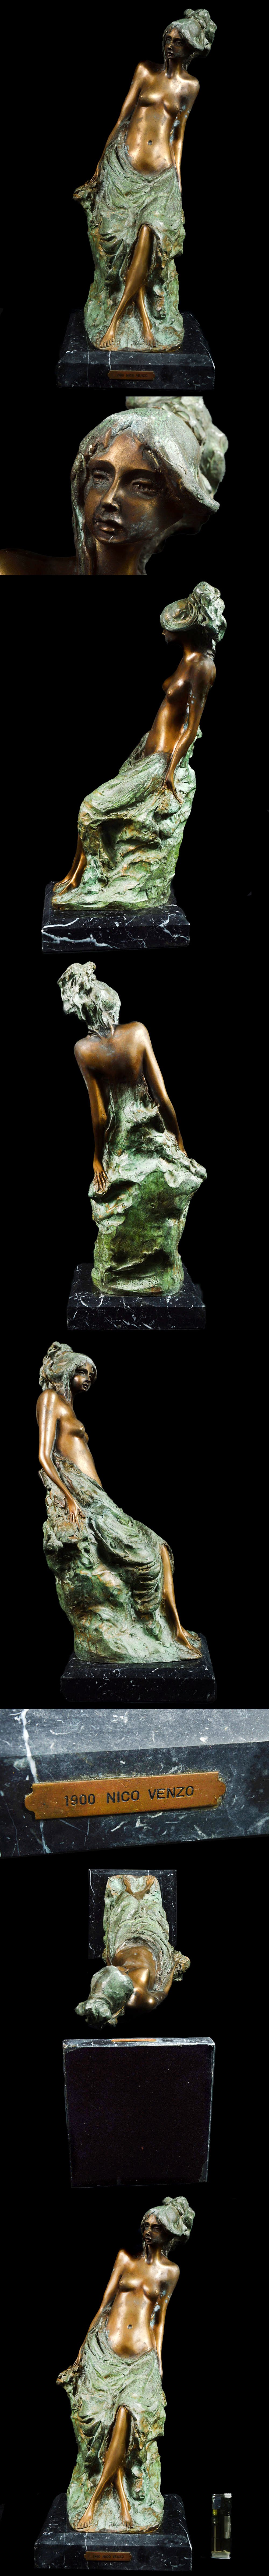 セールイタリア彫刻家 NicoVenzo ニコ・ヴェンゾ 腰掛ける裸婦 美人像 ブロンズ像 高さ48㎝ 重さ8.1㎏ アンティーク(旧家蔵出)AA194 CTOB23 西洋彫刻